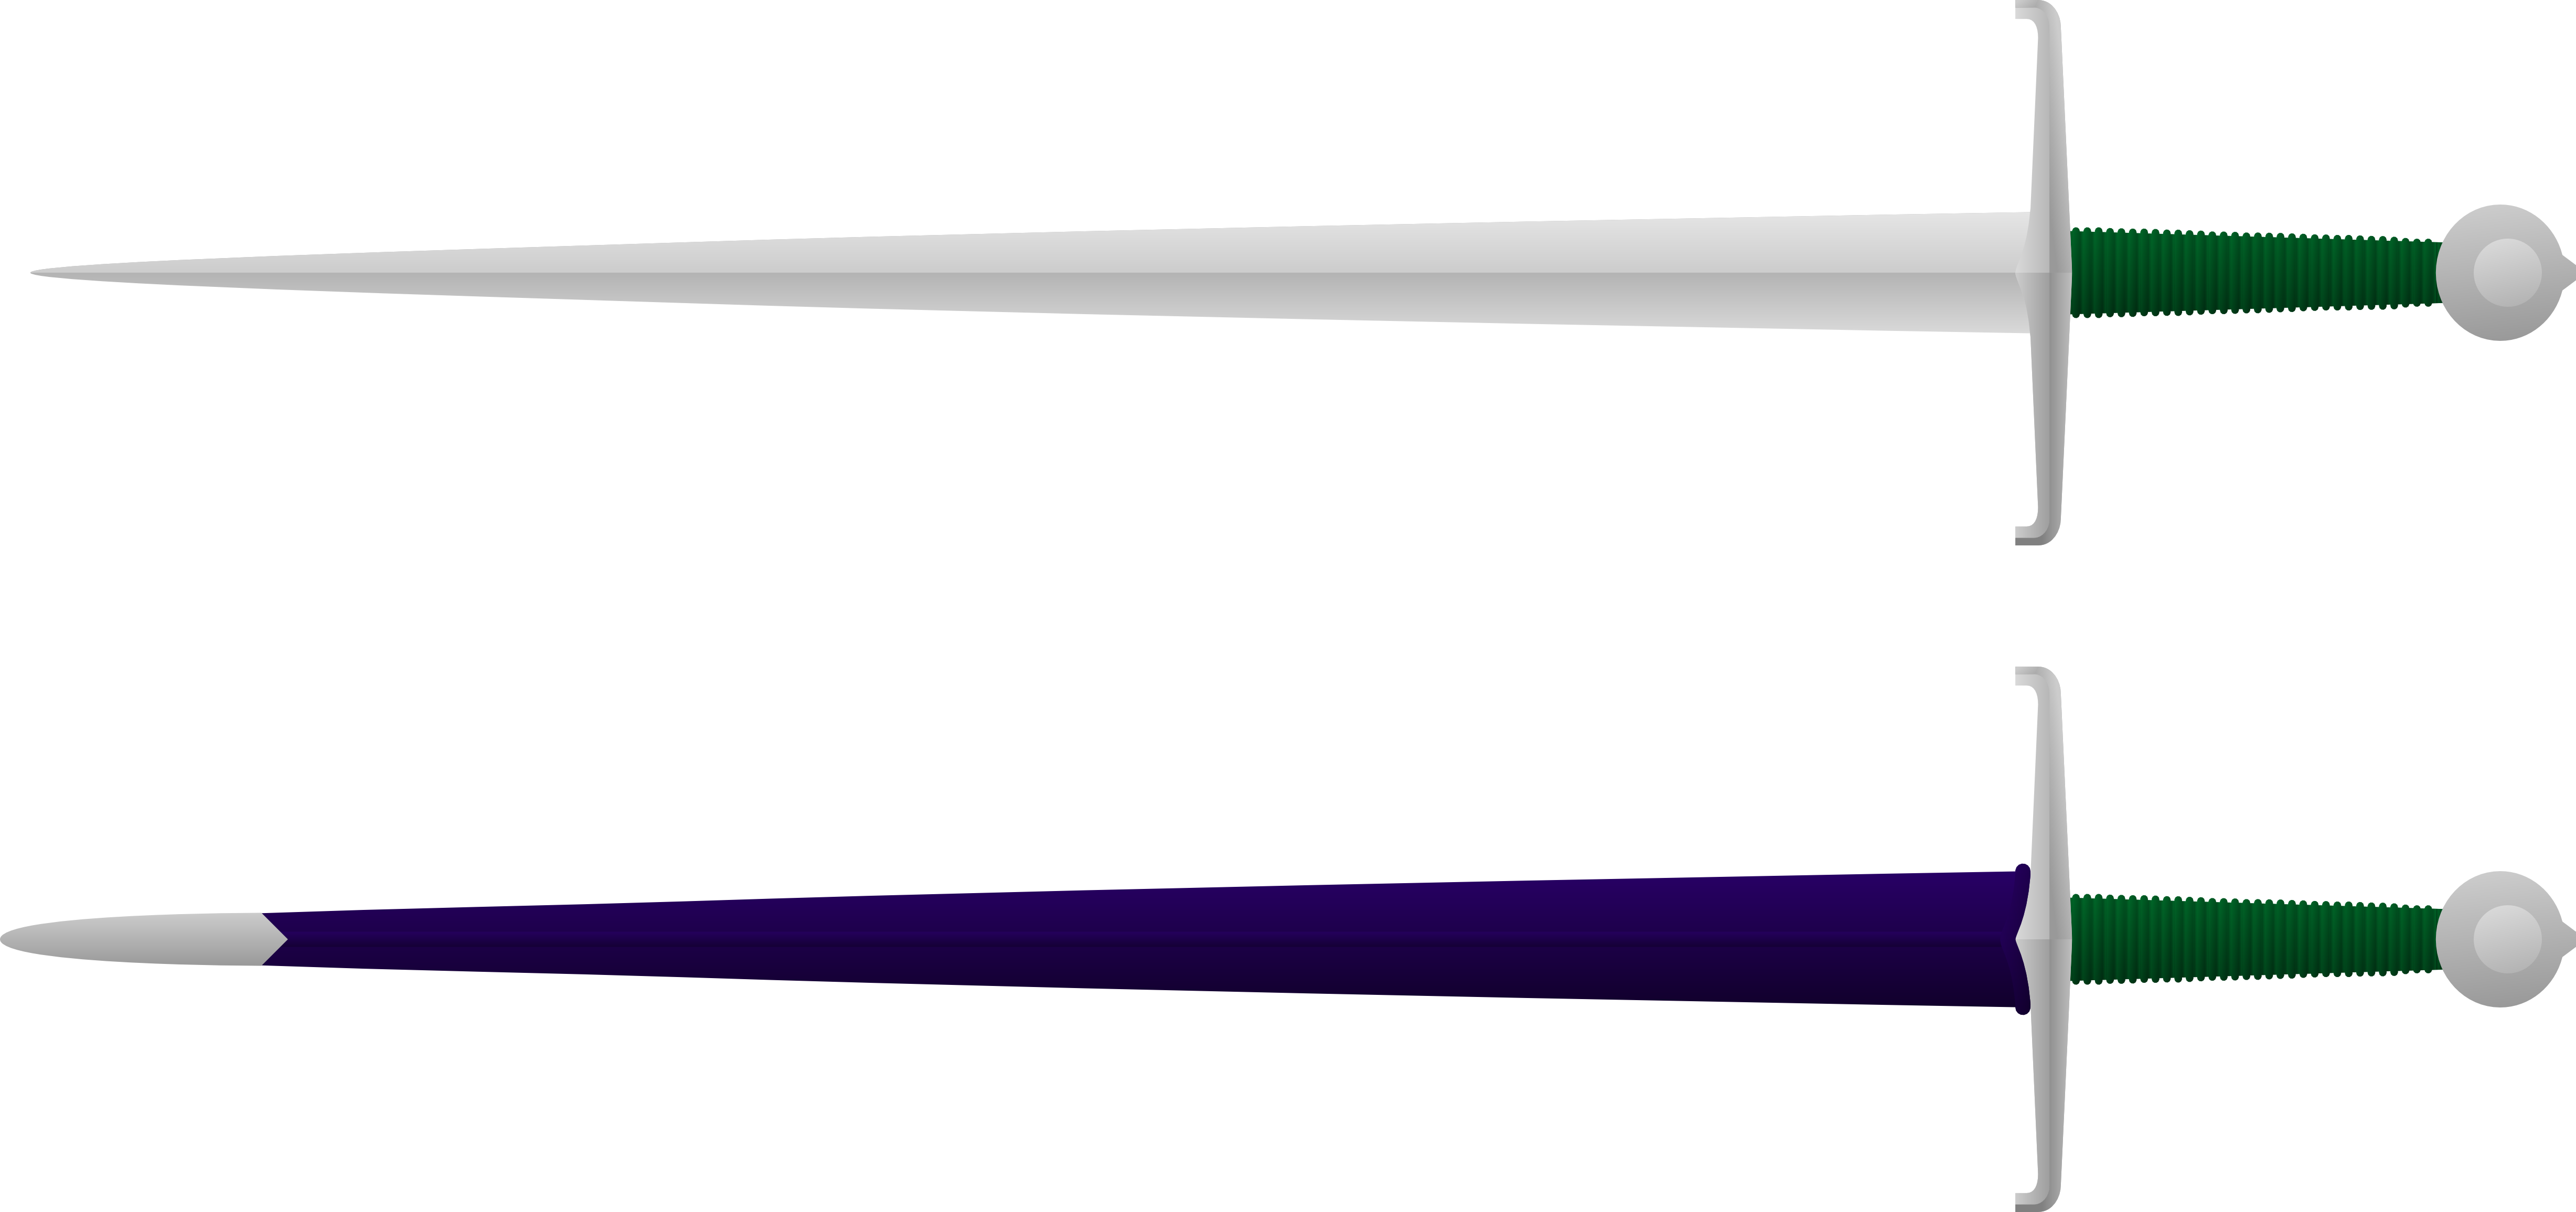 42" Blade Length - 42" Blade Length (4911x2311)